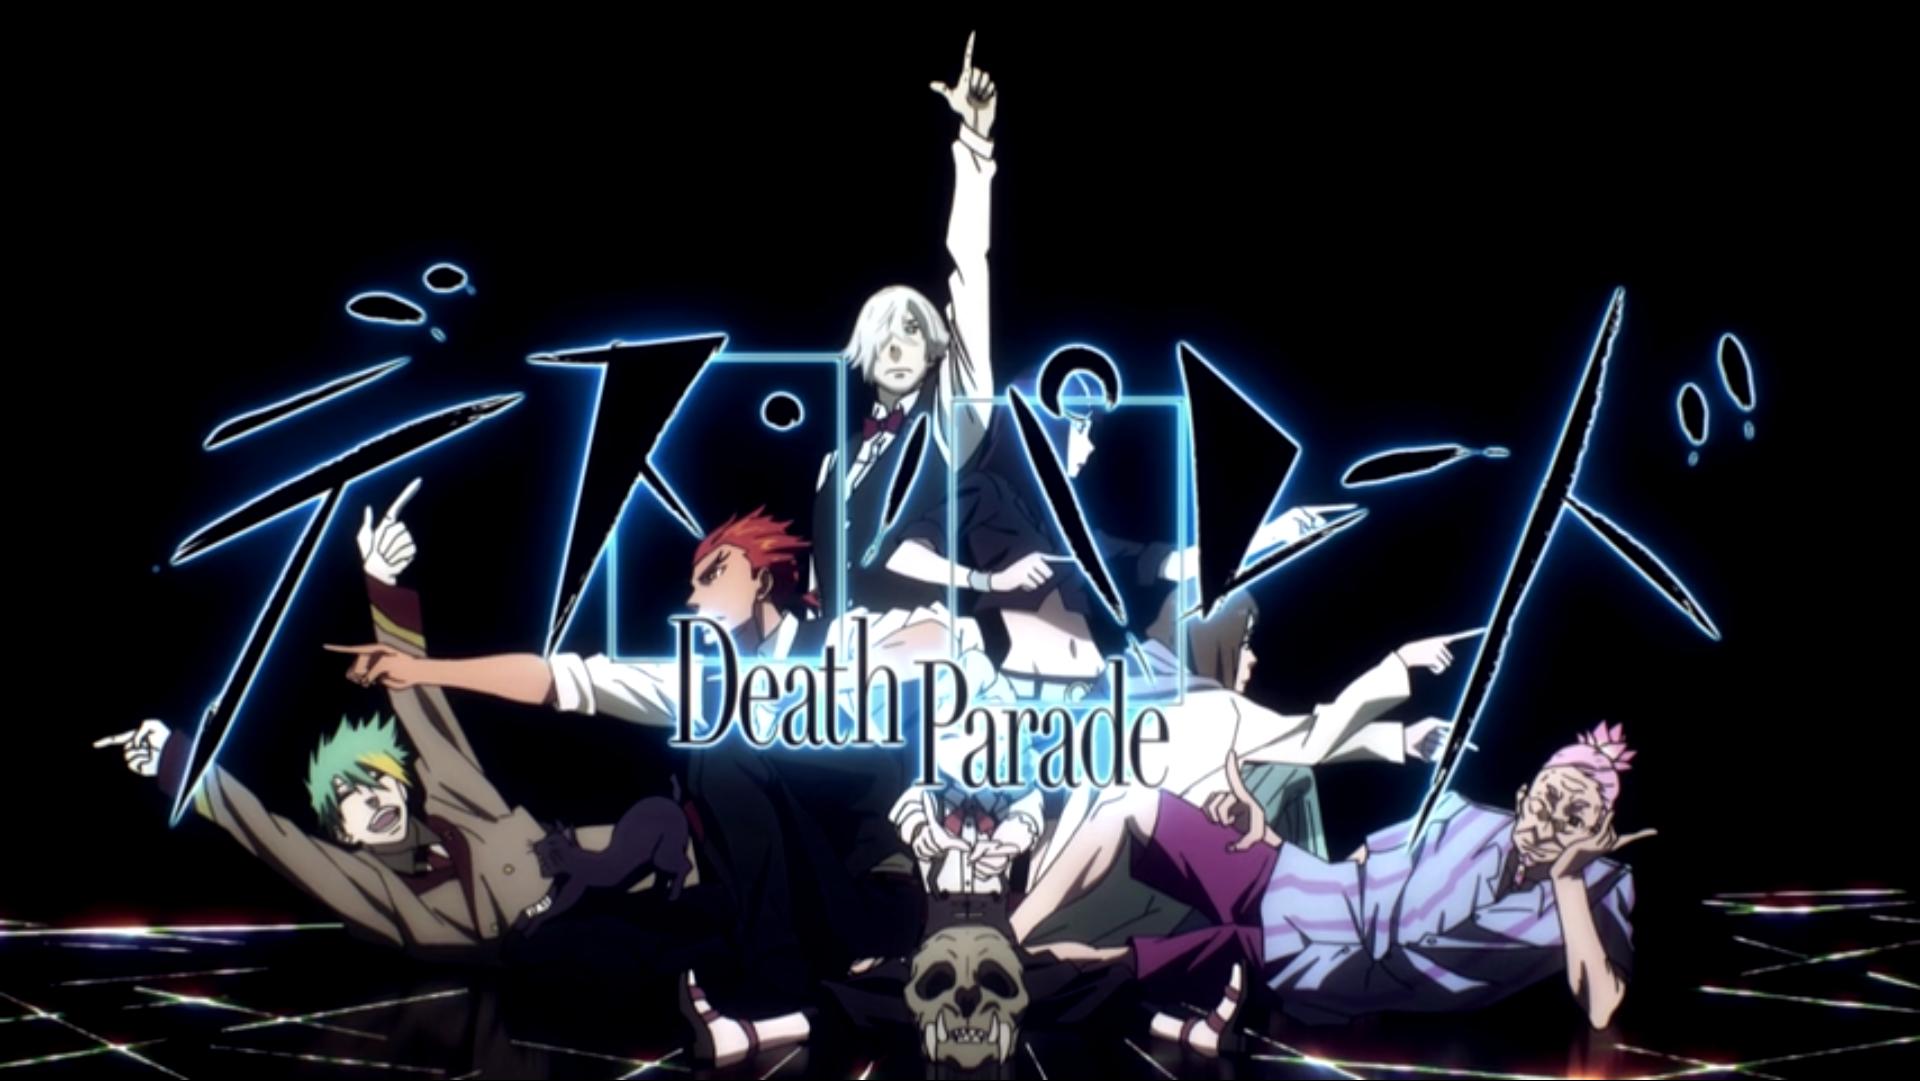 Decim of Death Parade 4K wallpaper download